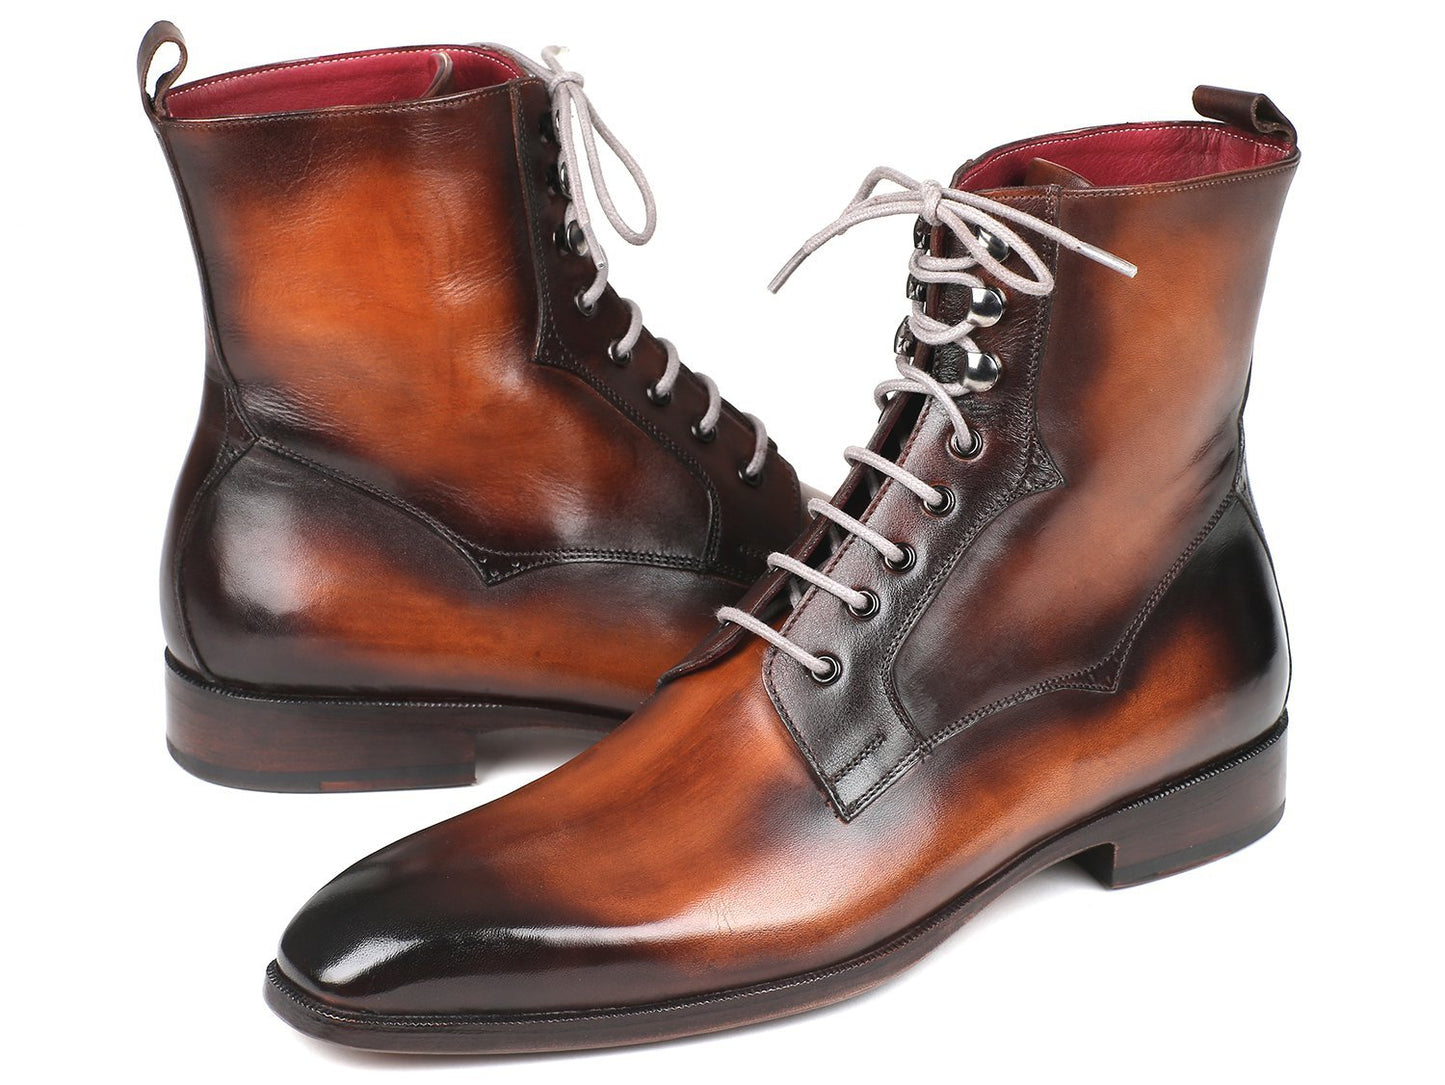 TEEK - Paul Parkman Hand-Painted Boots SHOES theteekdotcom   